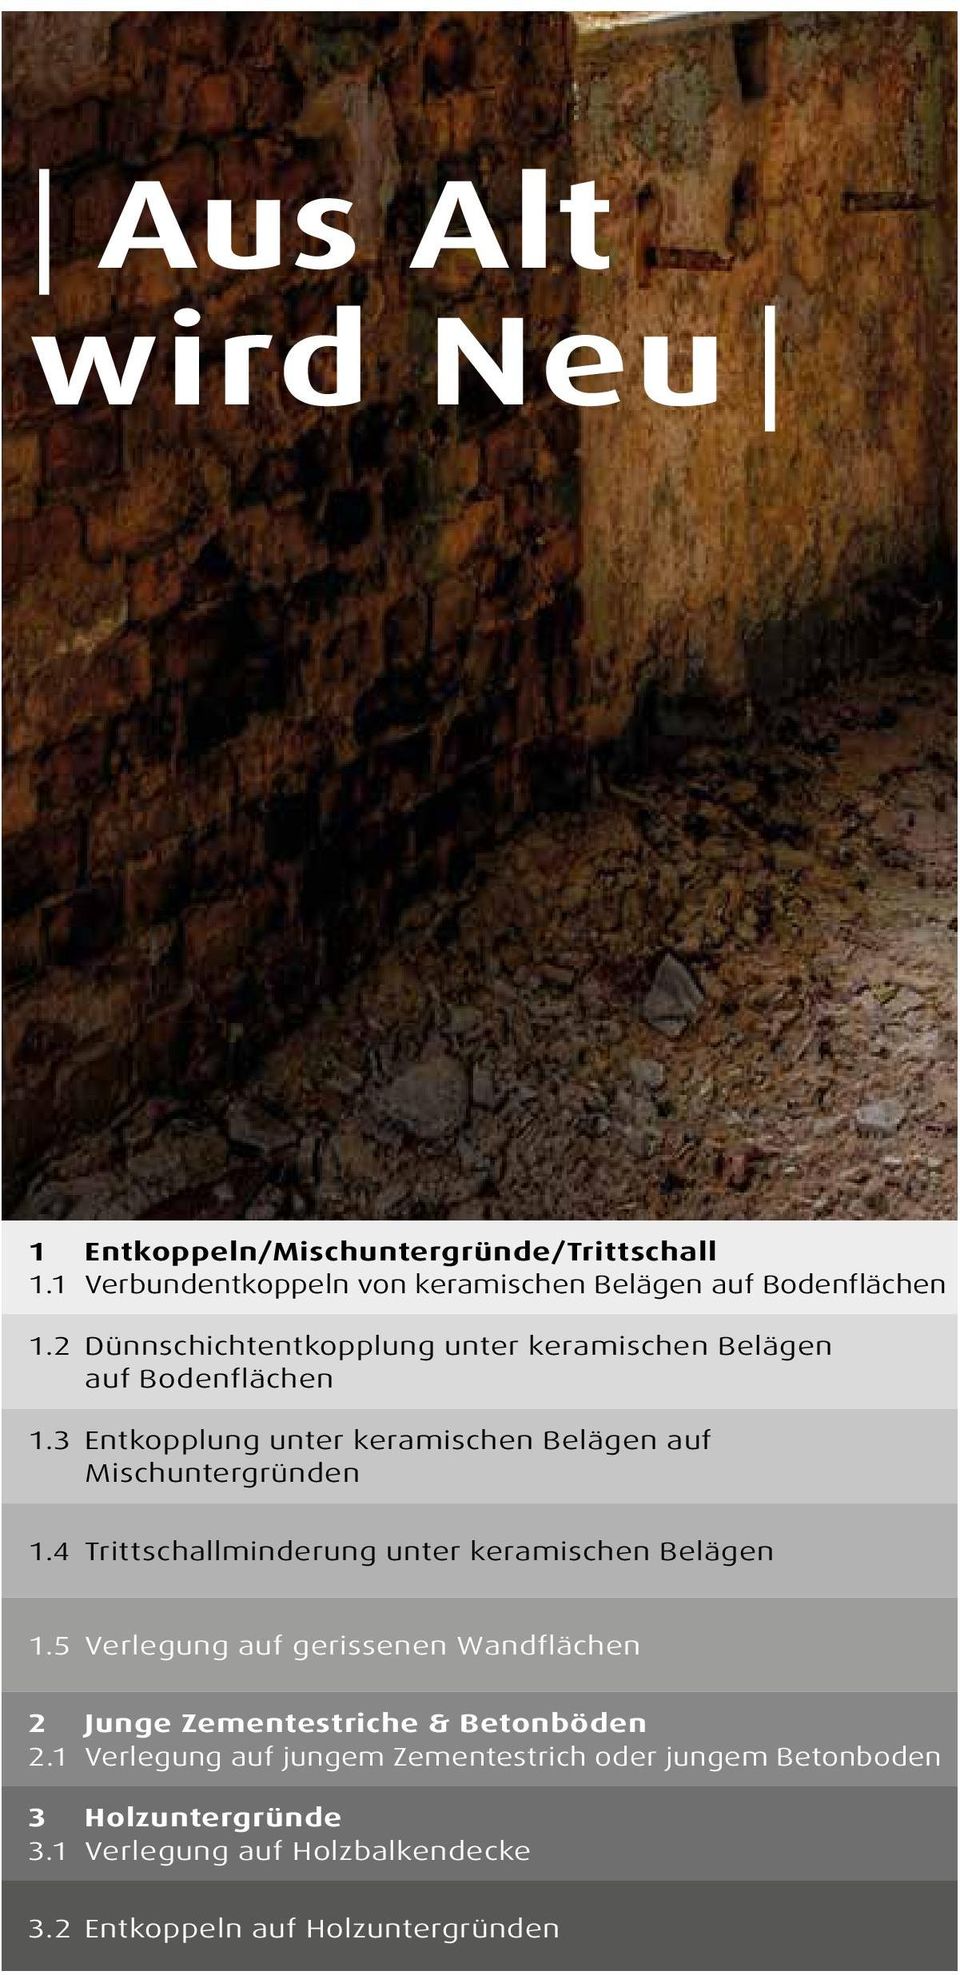 4 Trittschallminderung unter keramischen Belägen 1.5 Verlegung auf gerissenen Wandflächen 2 Junge Zementestriche & Betonböden 2.